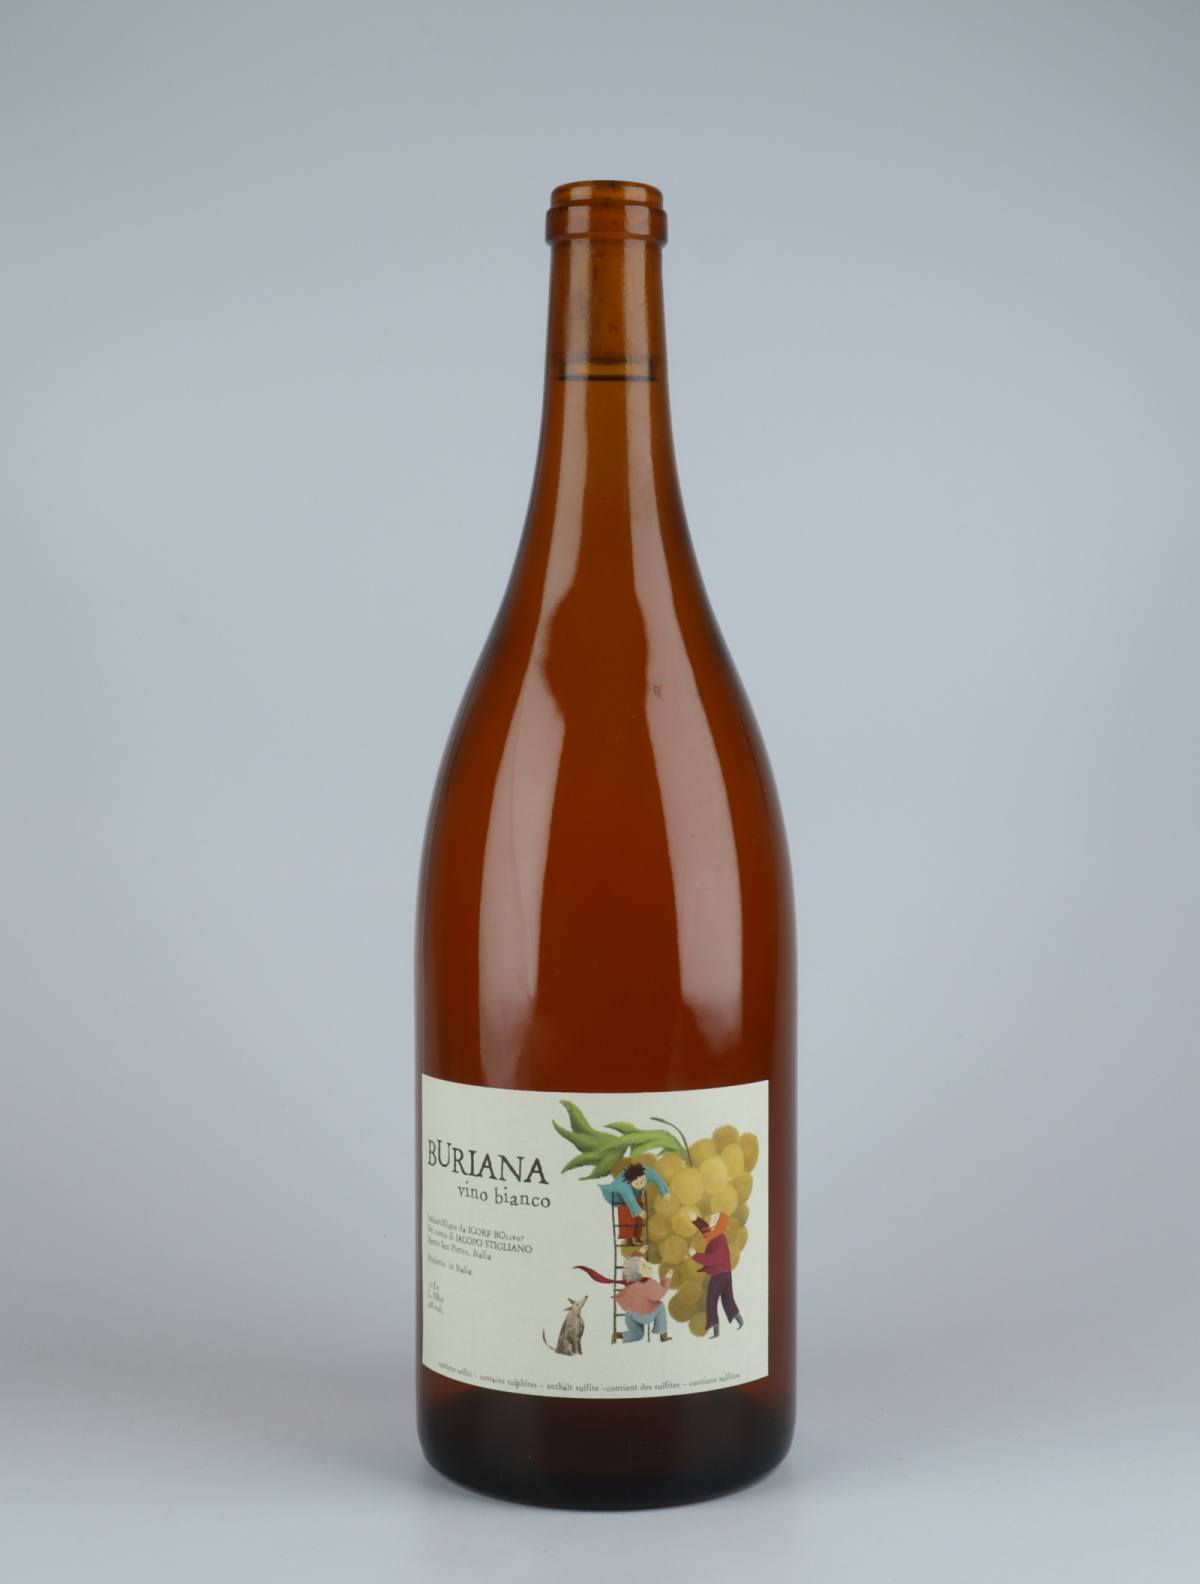 A bottle 2019 Buriana White wine from Jacopo Stigliano, Emilia-Romagna in Italy